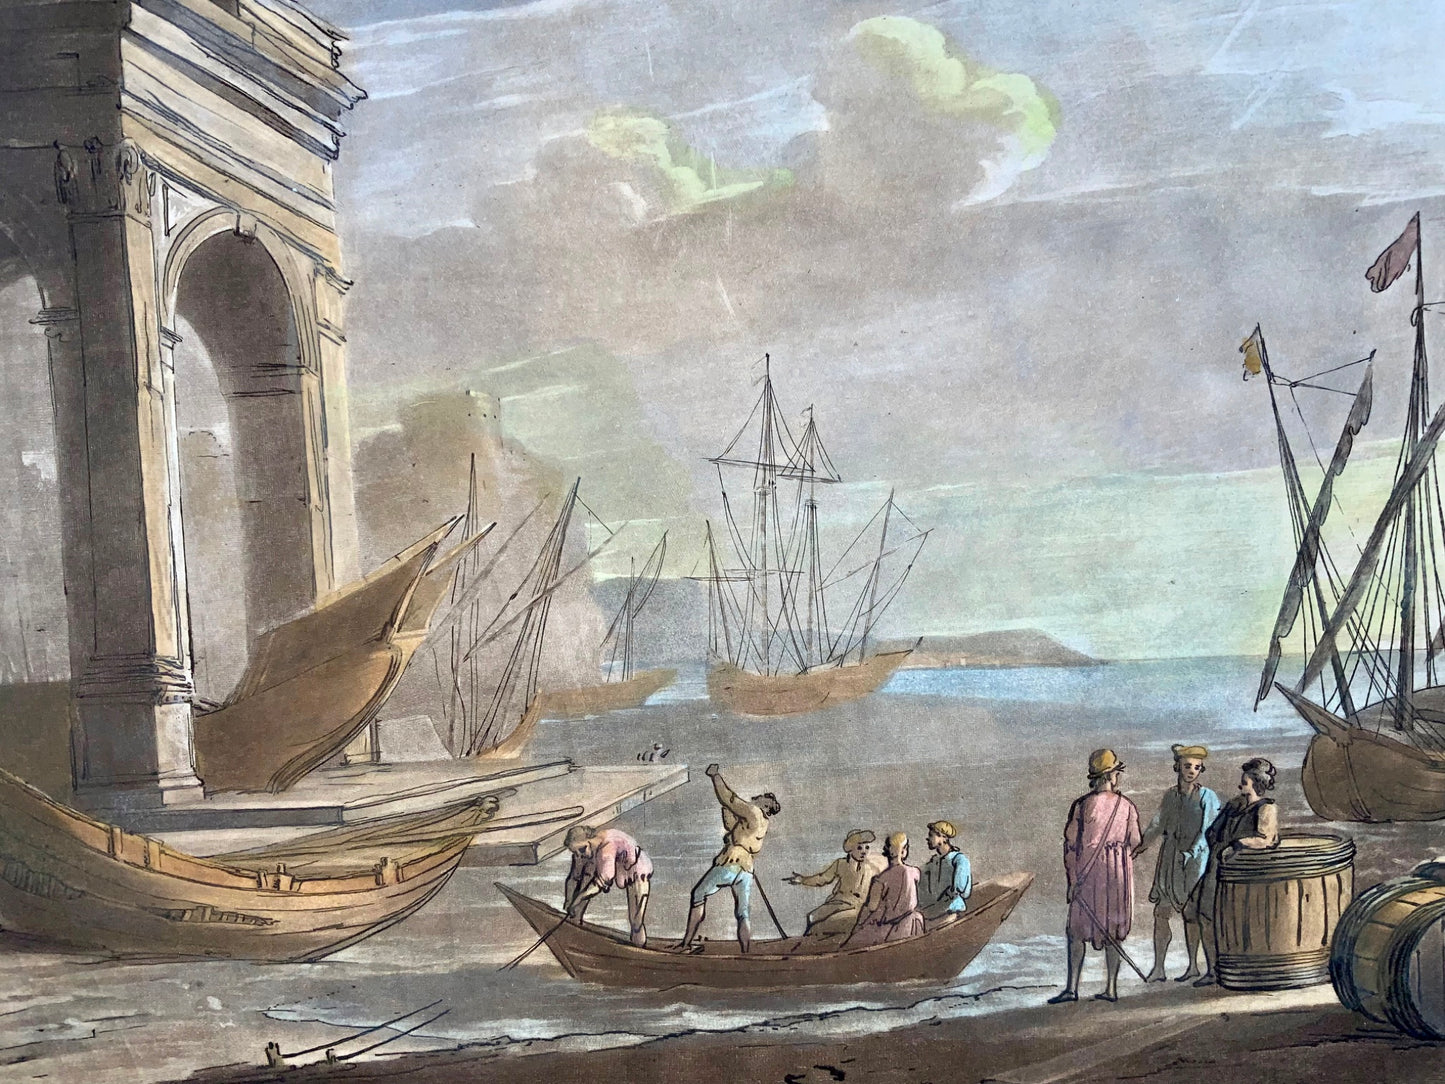 1774 Richard Earlom d'après CLAUDE LORRAIN - Vue du port avec navires - Grand papier - Art classique